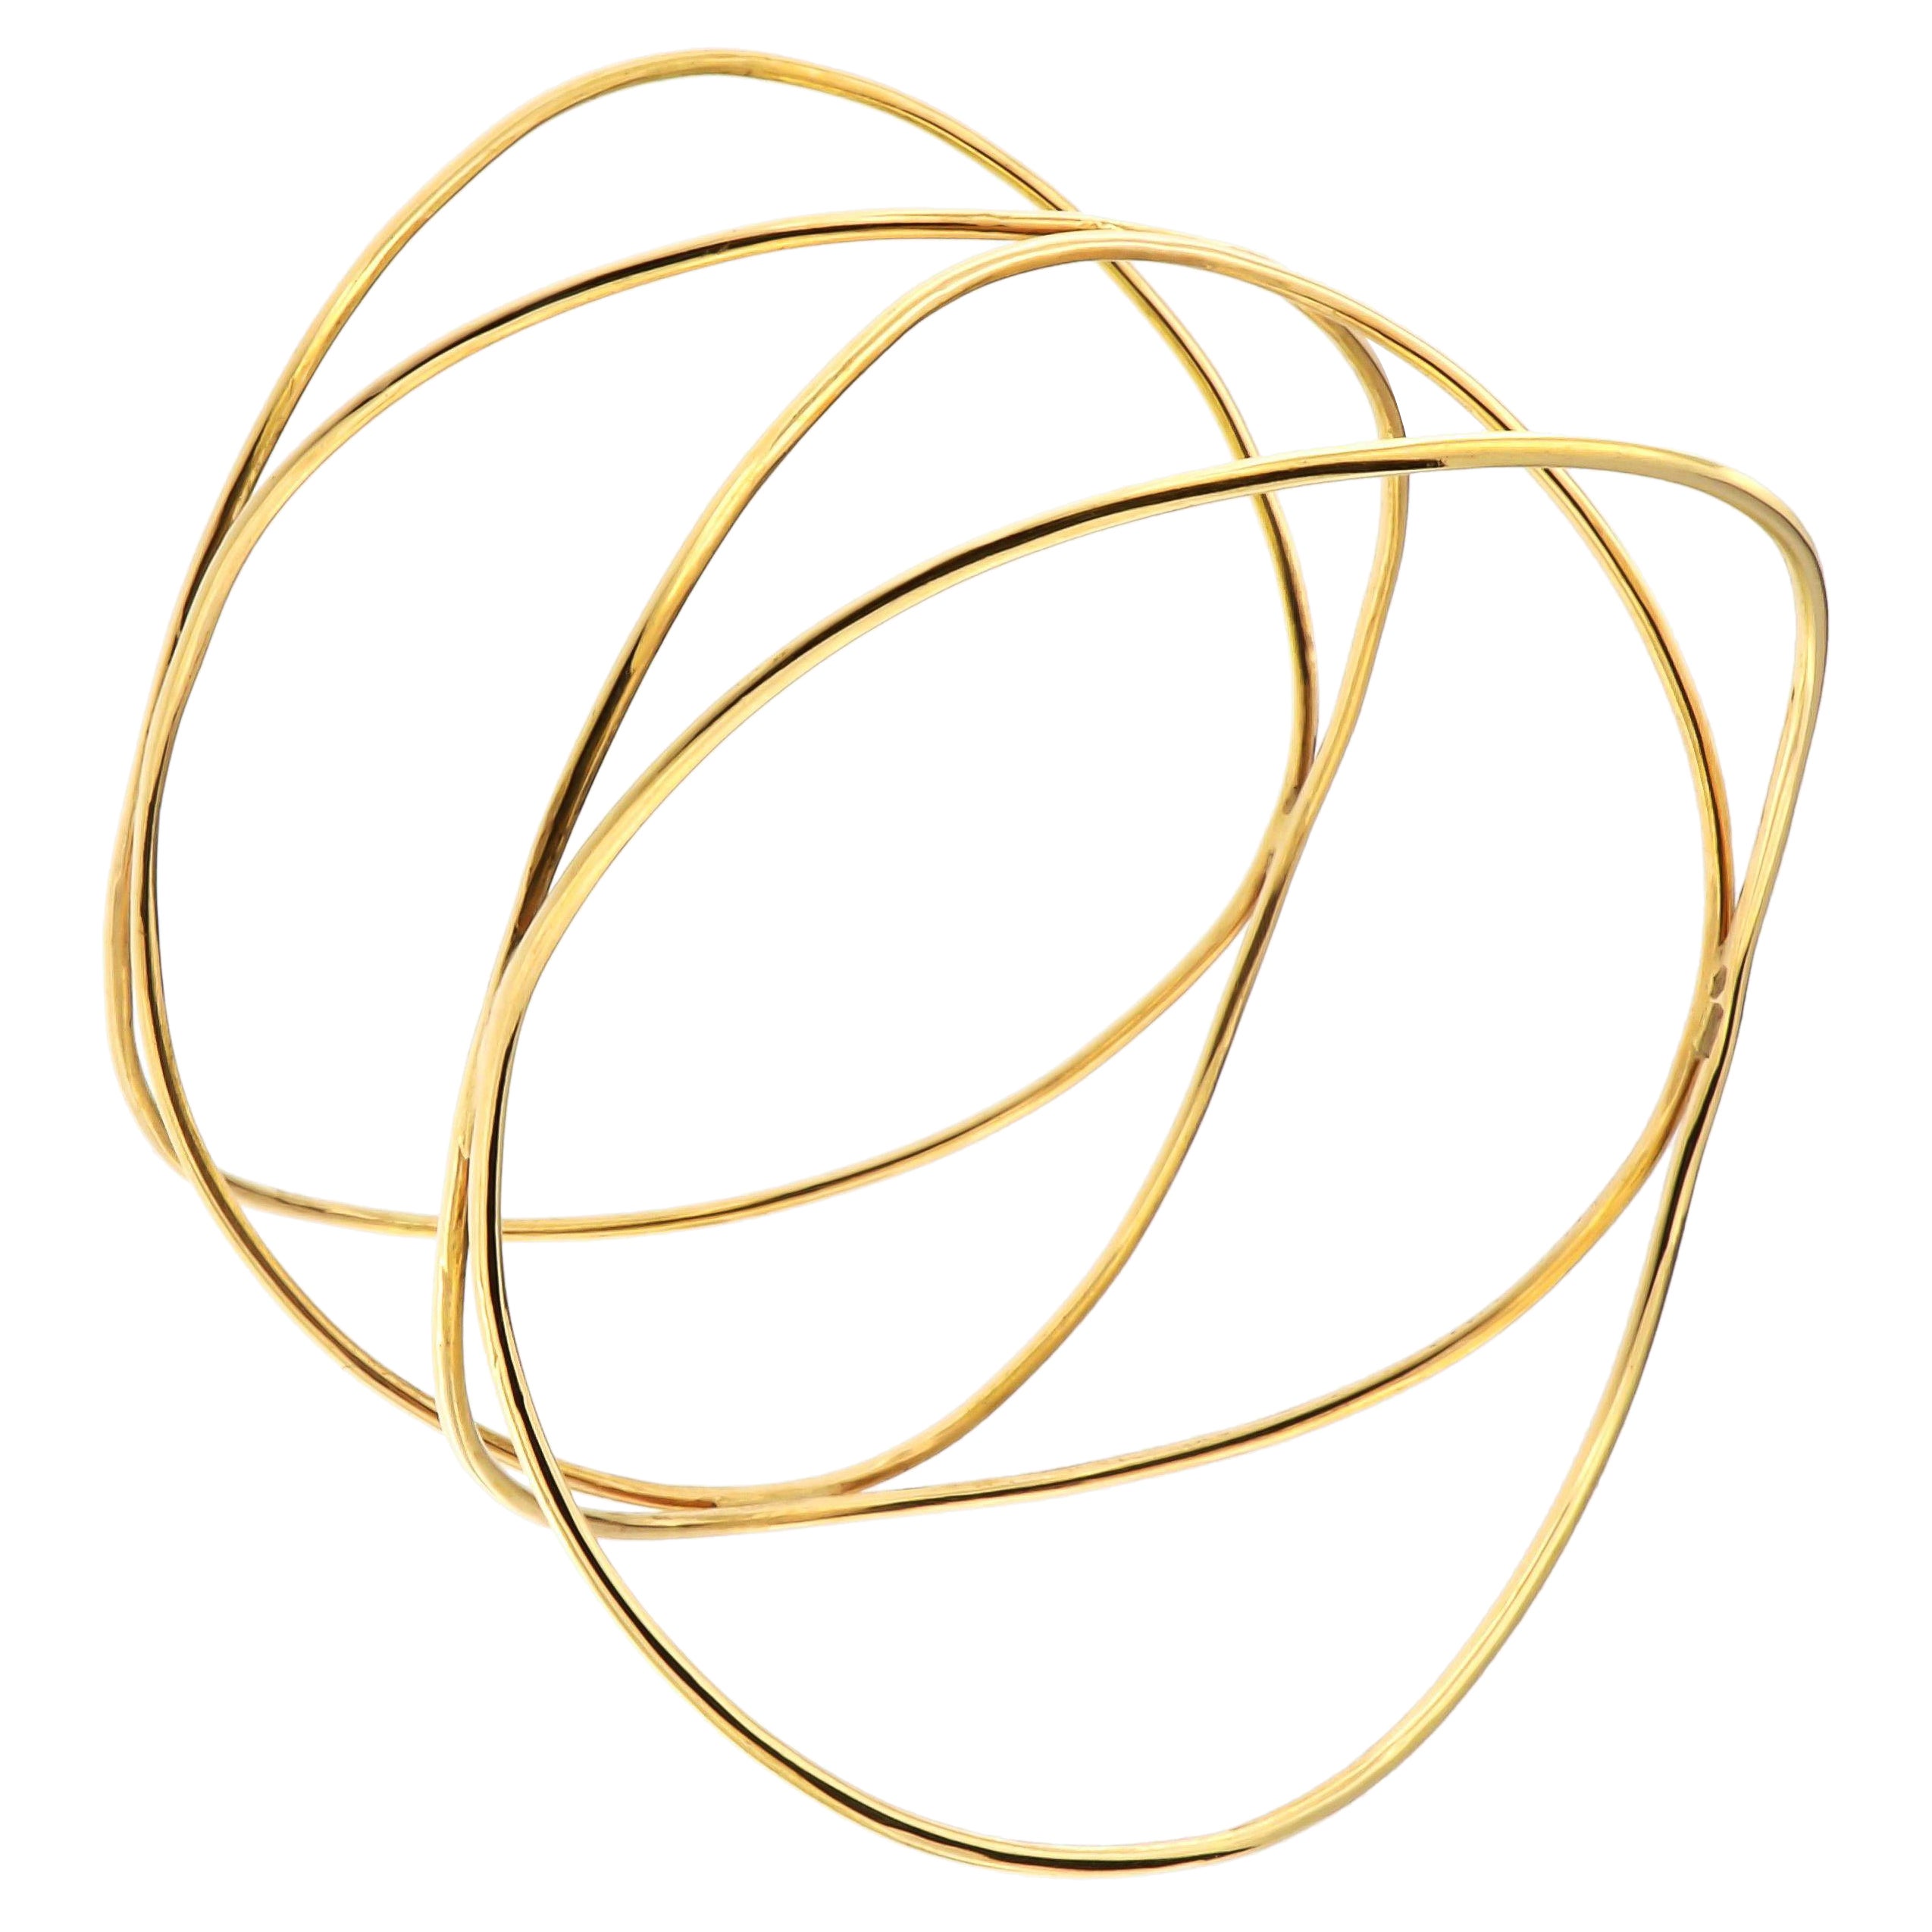 Bracelet artisanal en or rose 9 carats, fabriqué à la main en Italie